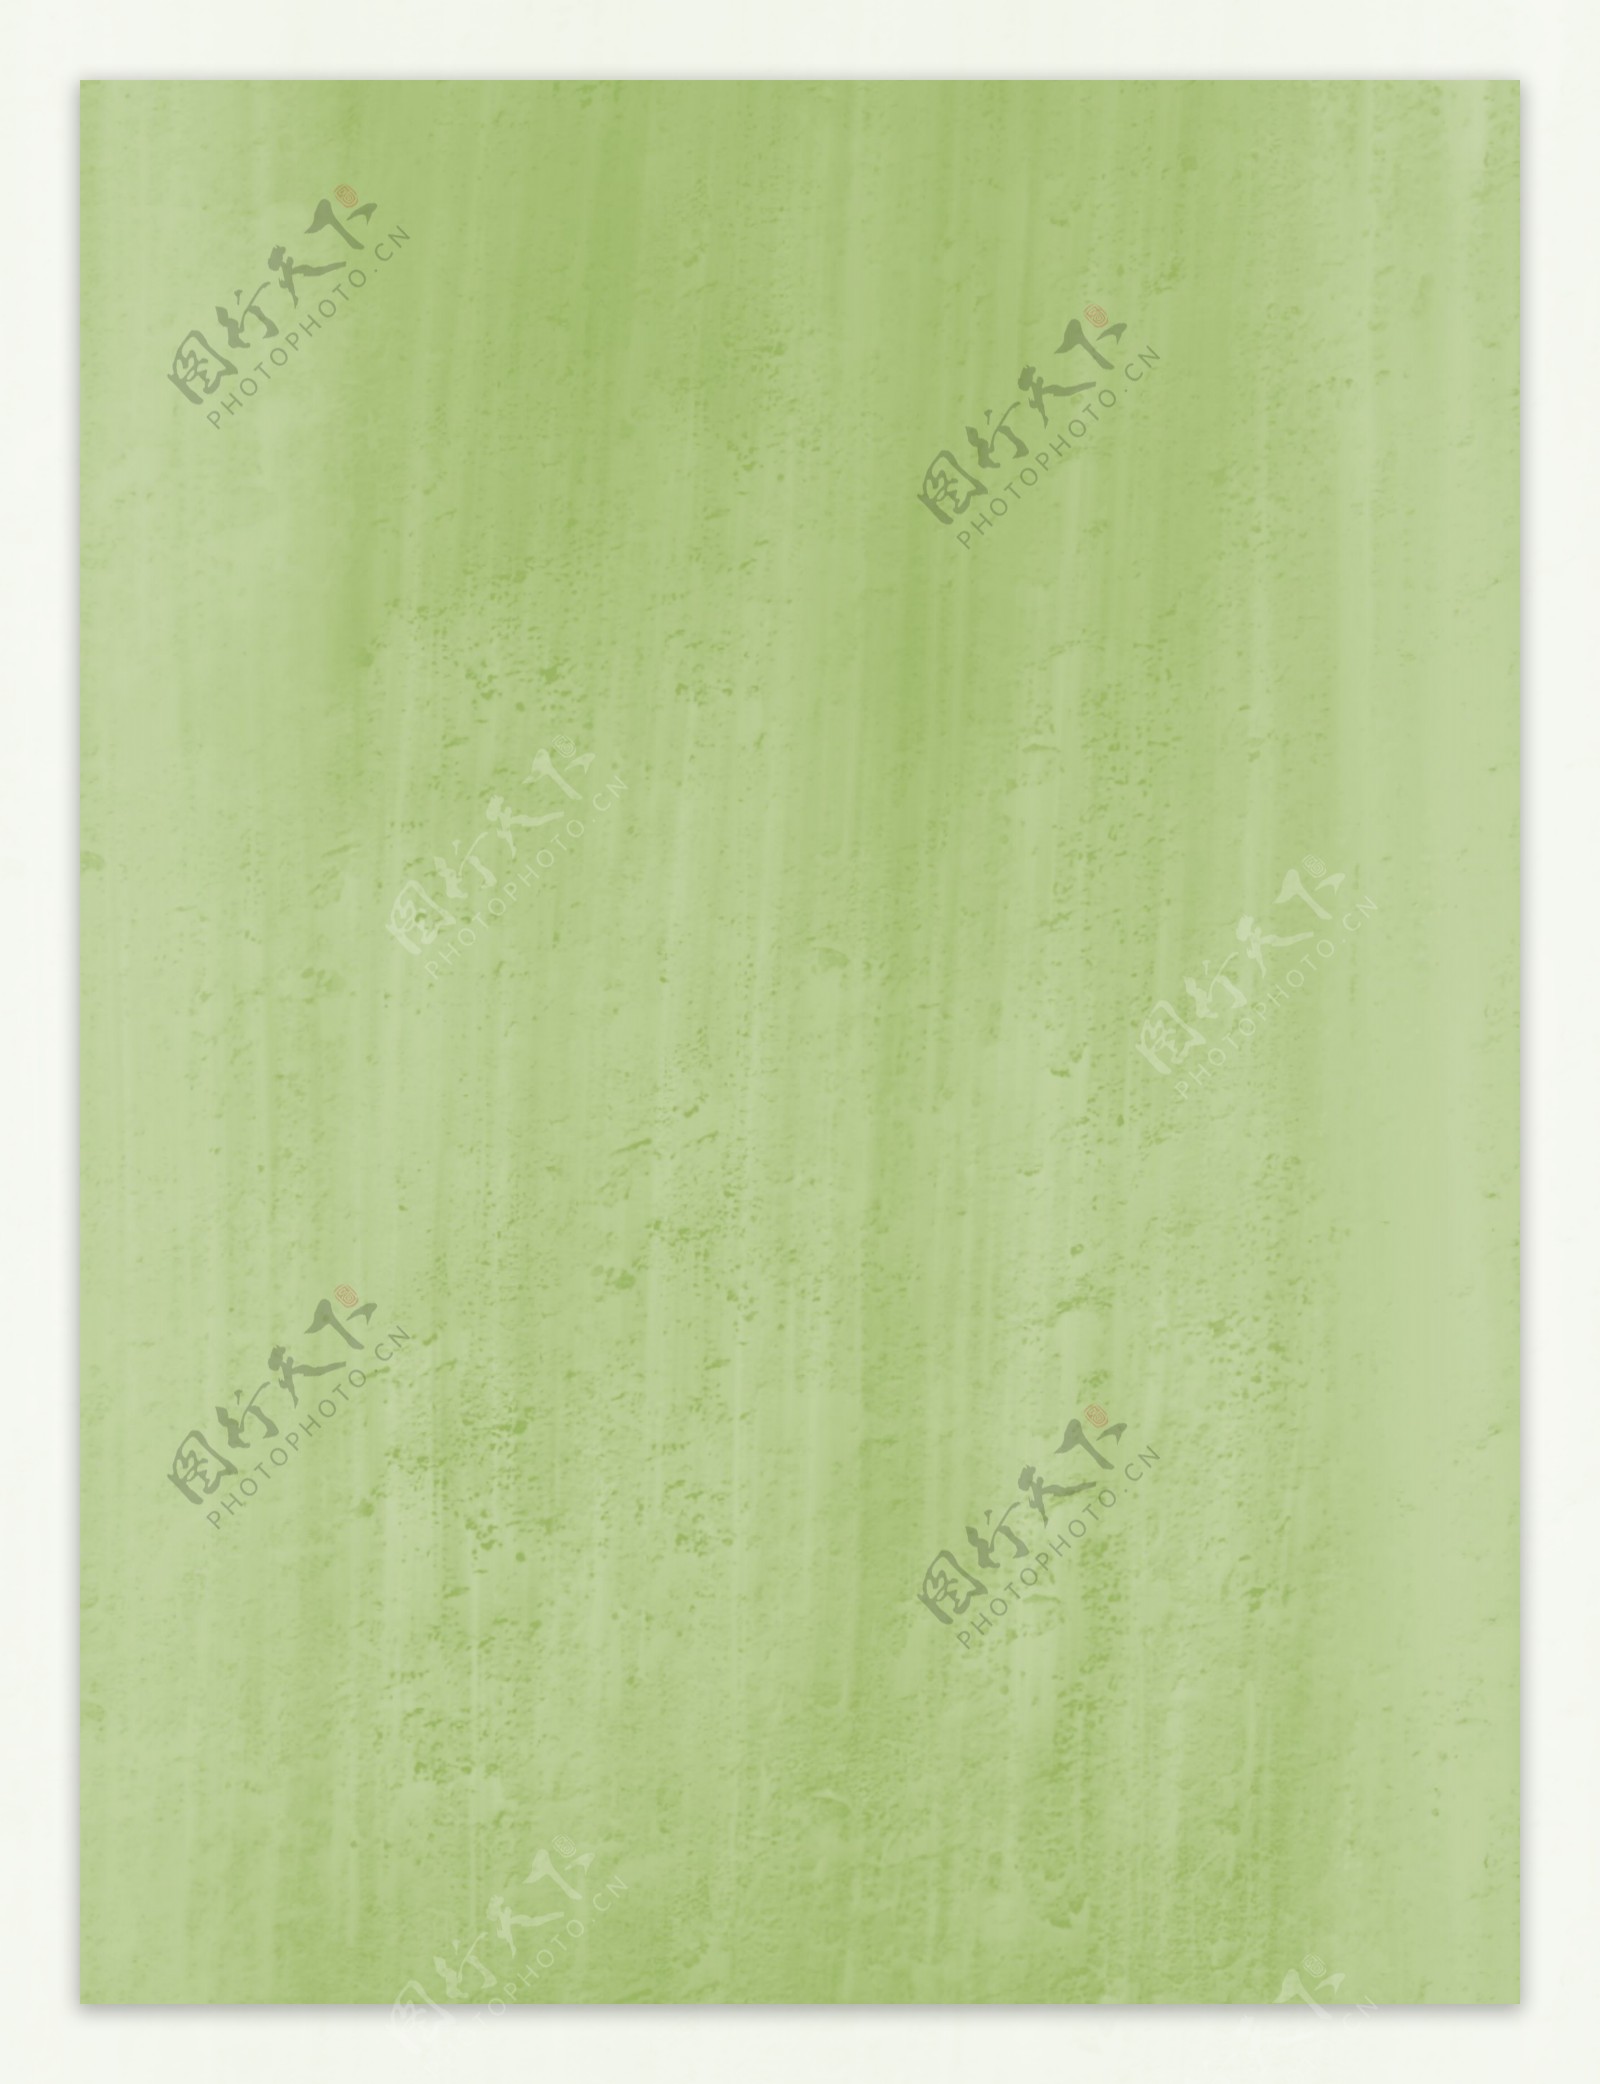 厚涂墙面马卡龙绿浅色粗糙质感纹理背景